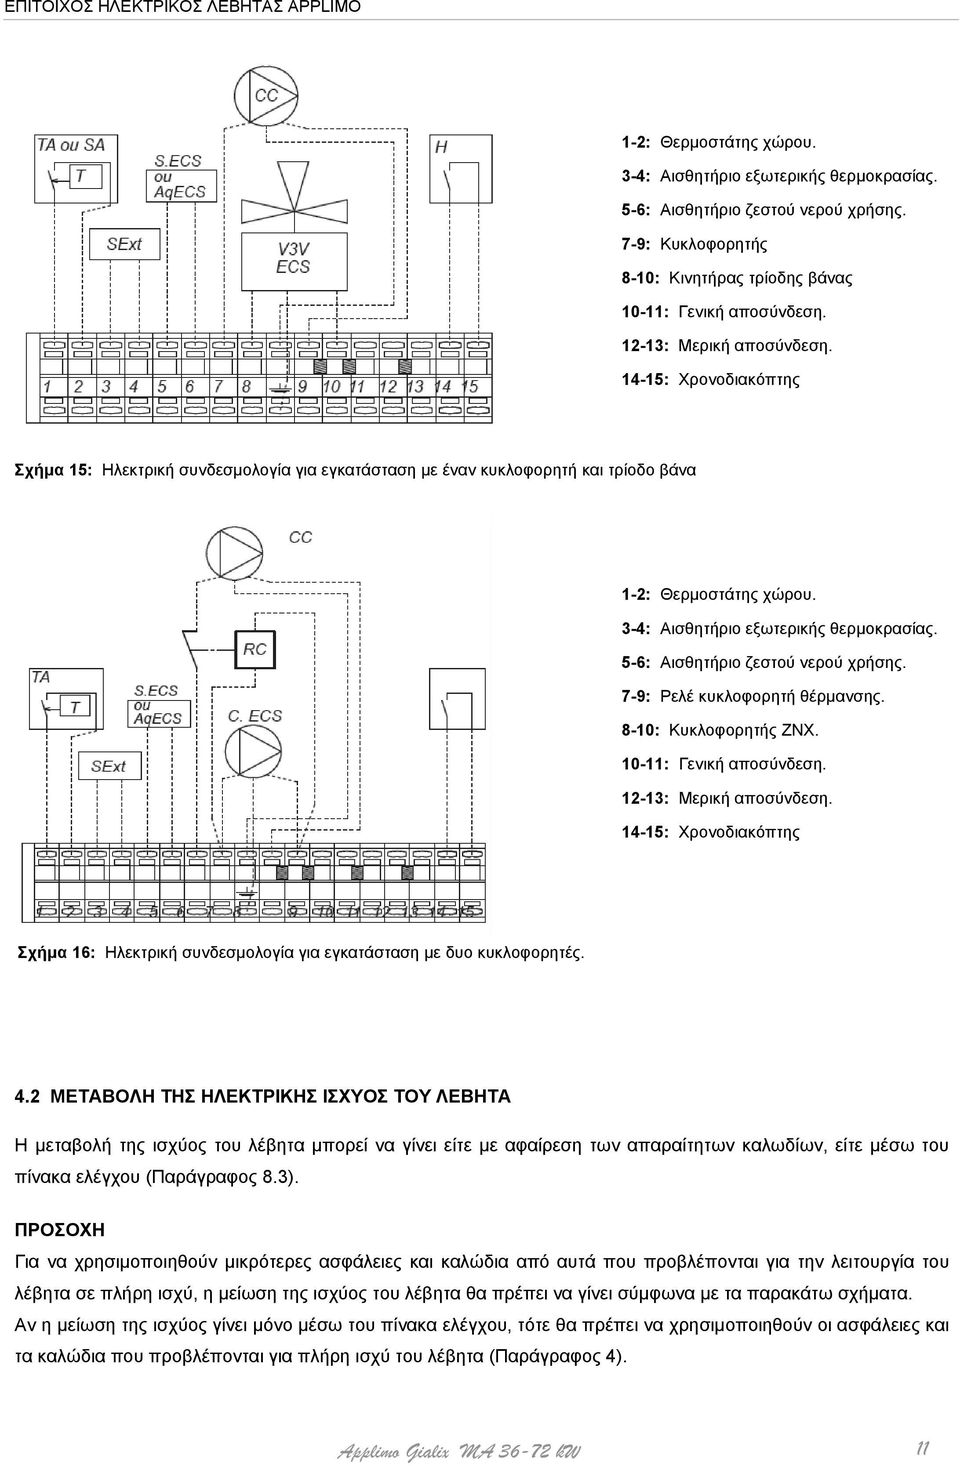 5-6: Αισθητήριο ζεστού νερού χρήσης. 7-9: Ρελέ κυκλοφορητή θέρμανσης. 8-10: Κυκλοφορητής ΖΝΧ. 10-11: Γενική αποσύνδεση. 12-13: Μερική αποσύνδεση.